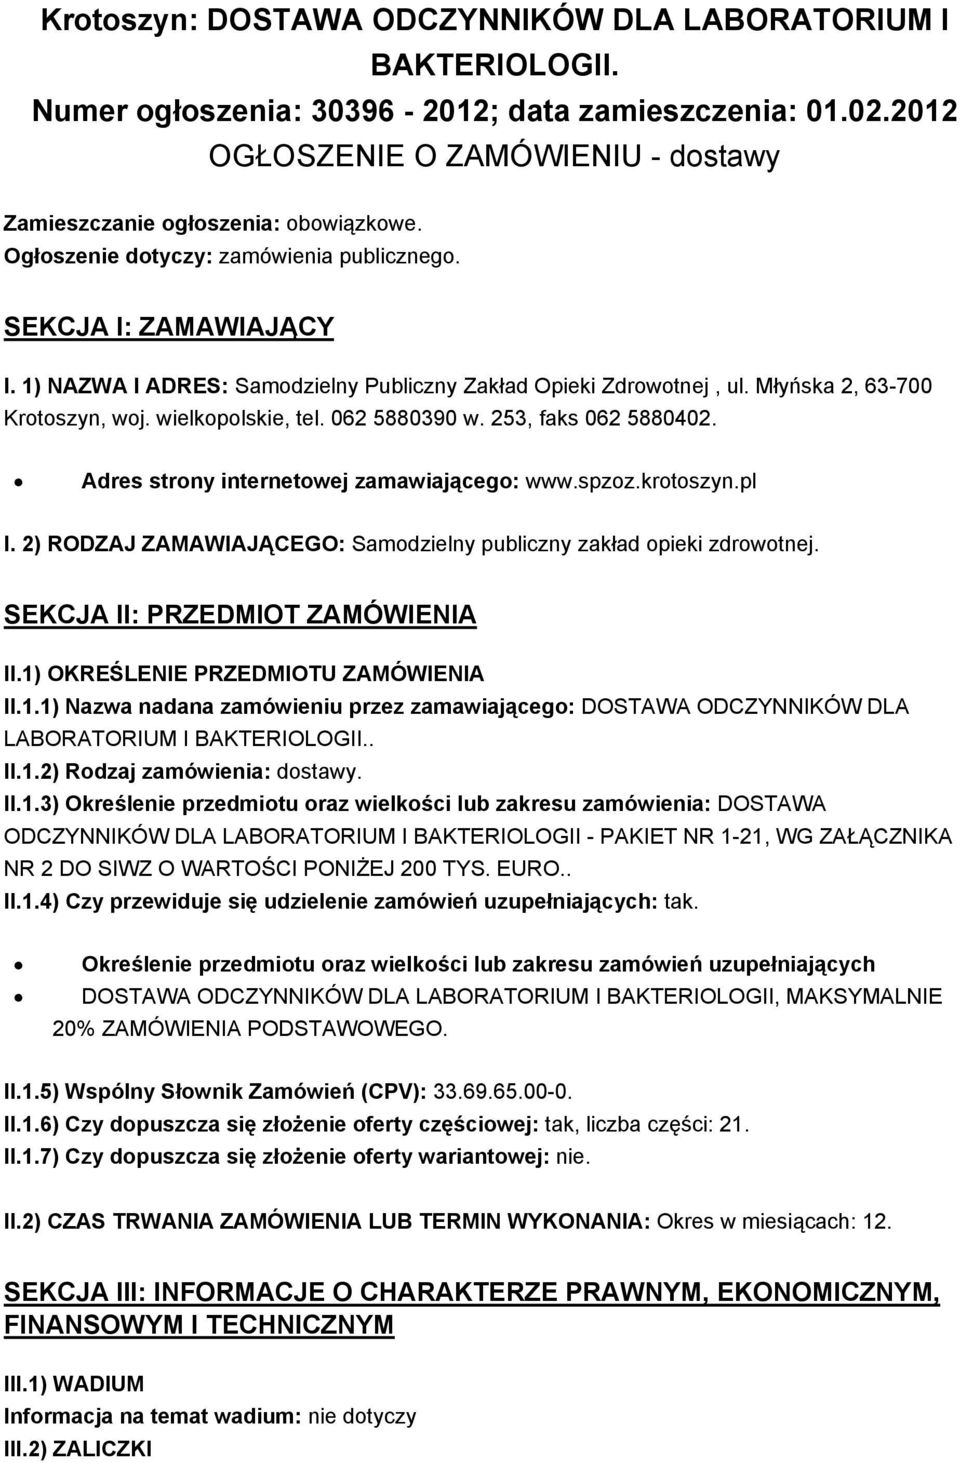 062 5880390 w. 253, faks 062 5880402. Adres strony internetowej zamawiającego: www.spzoz.krotoszyn.pl I. 2) RODZAJ ZAMAWIAJĄCEGO: Samodzielny publiczny zakład opieki zdrowotnej.